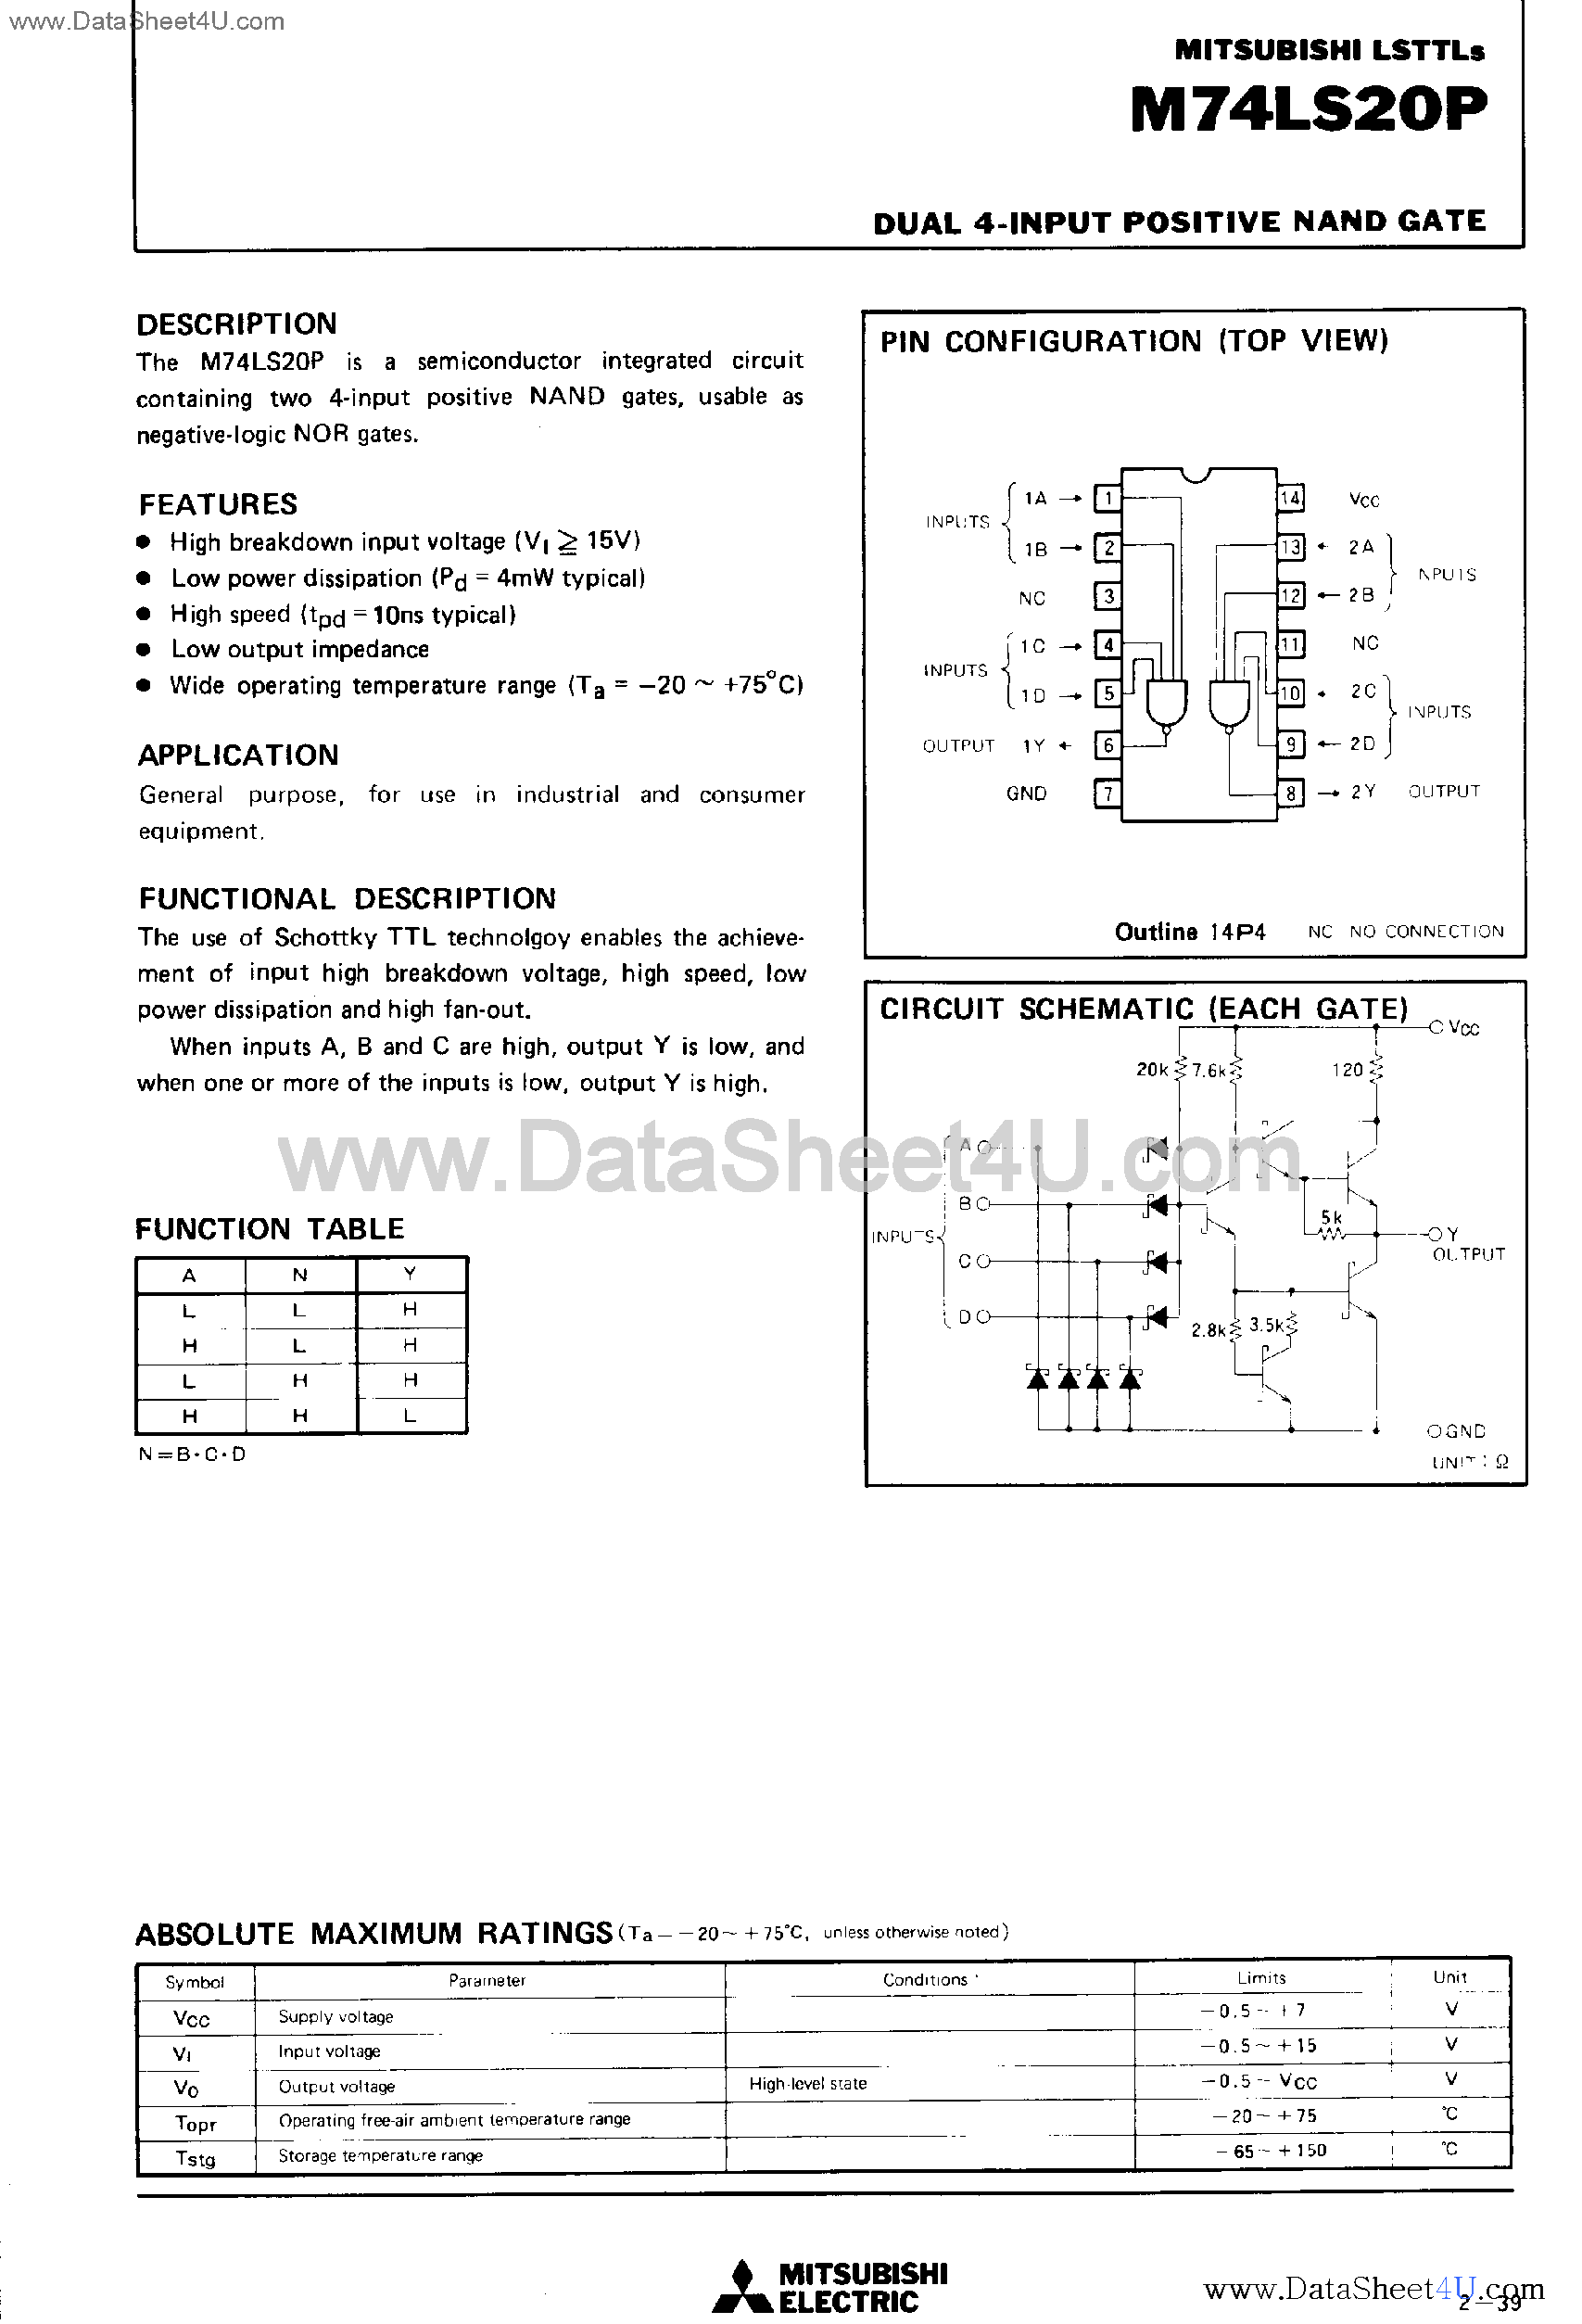 Даташит M74LS20P - Dual 4-Input Positive NAND Gate страница 1